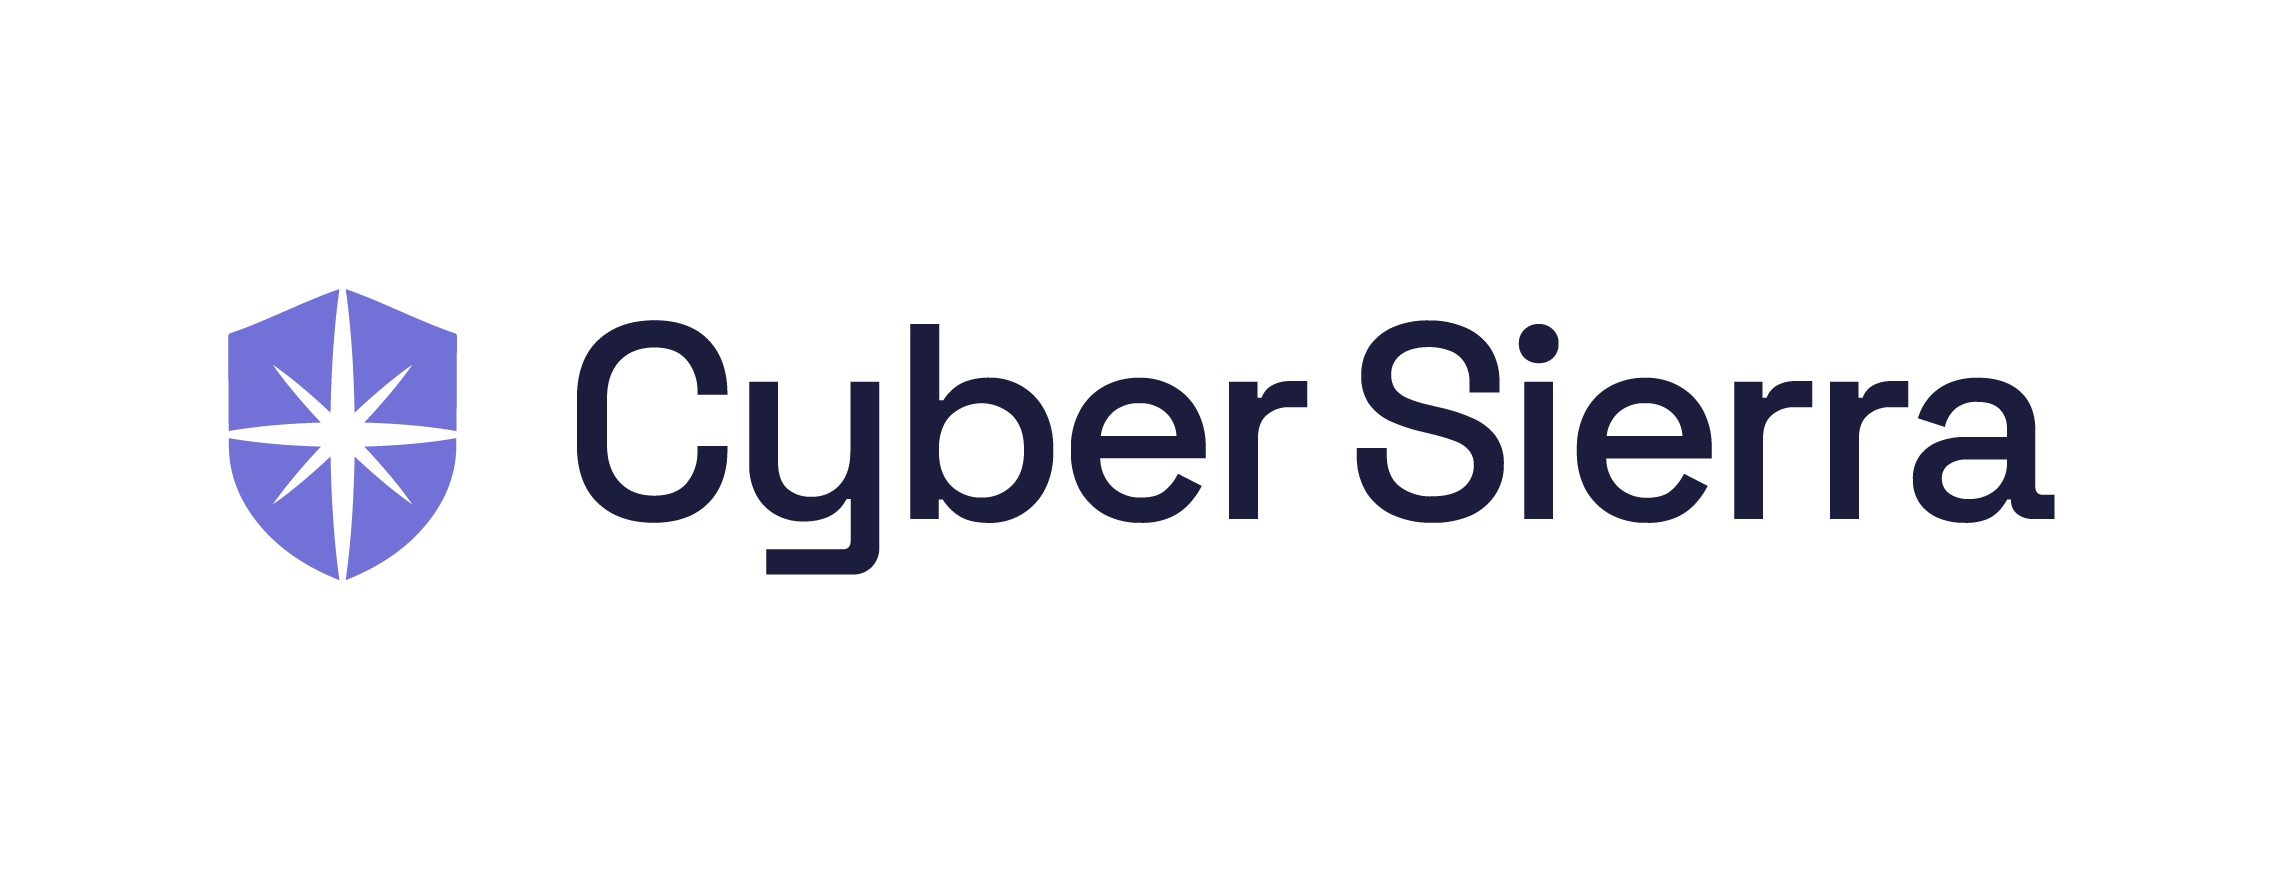 Cyber Sierra